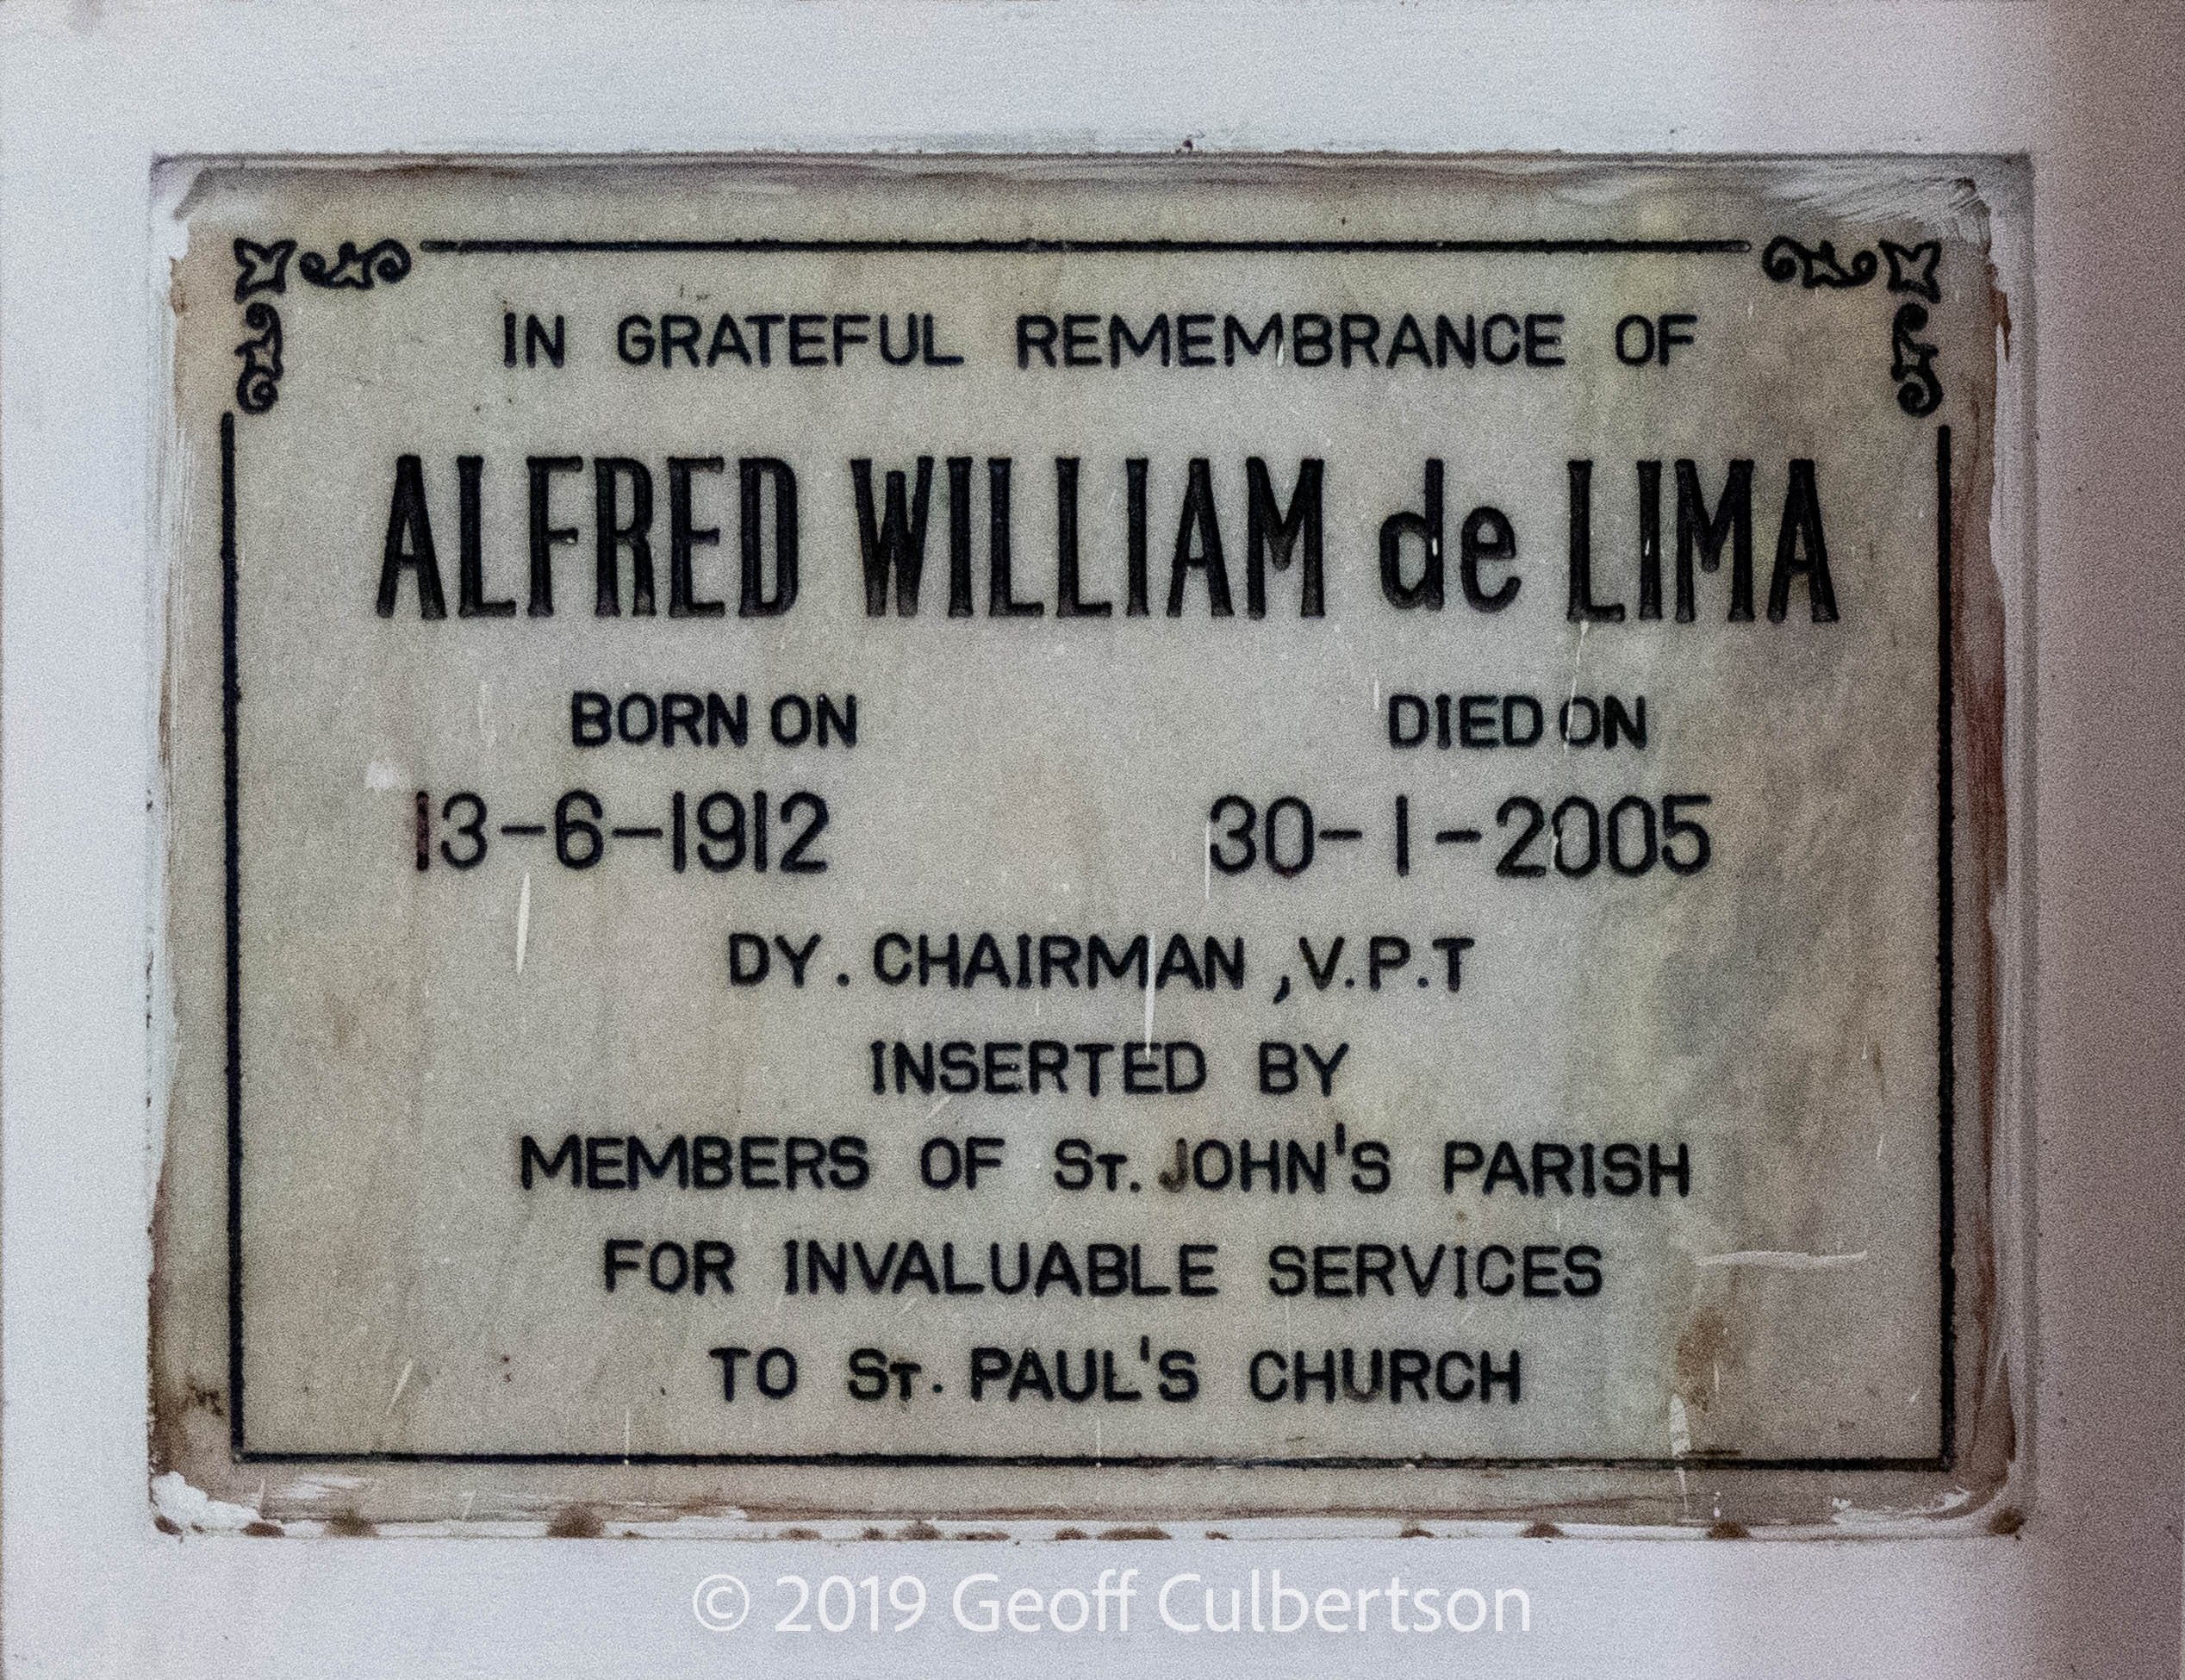 MI - Alfred William de Lima died 20-Jan-2005